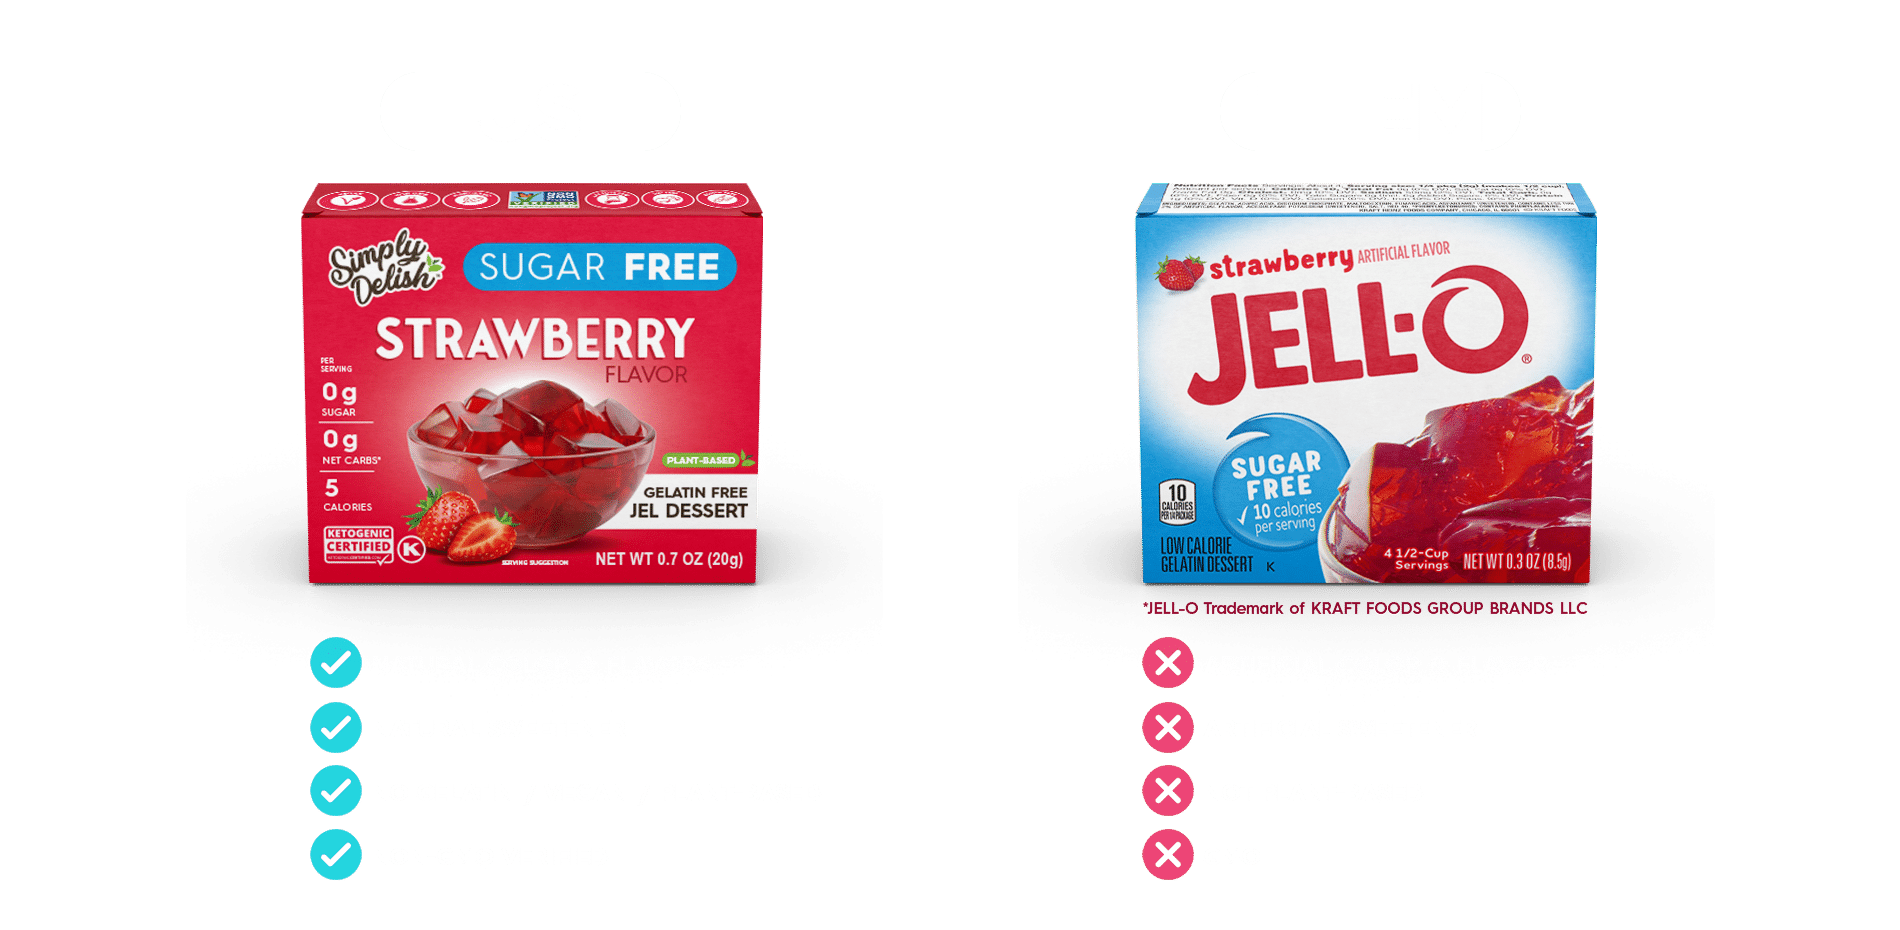 Keto Jels - Simply Delish vs Jello